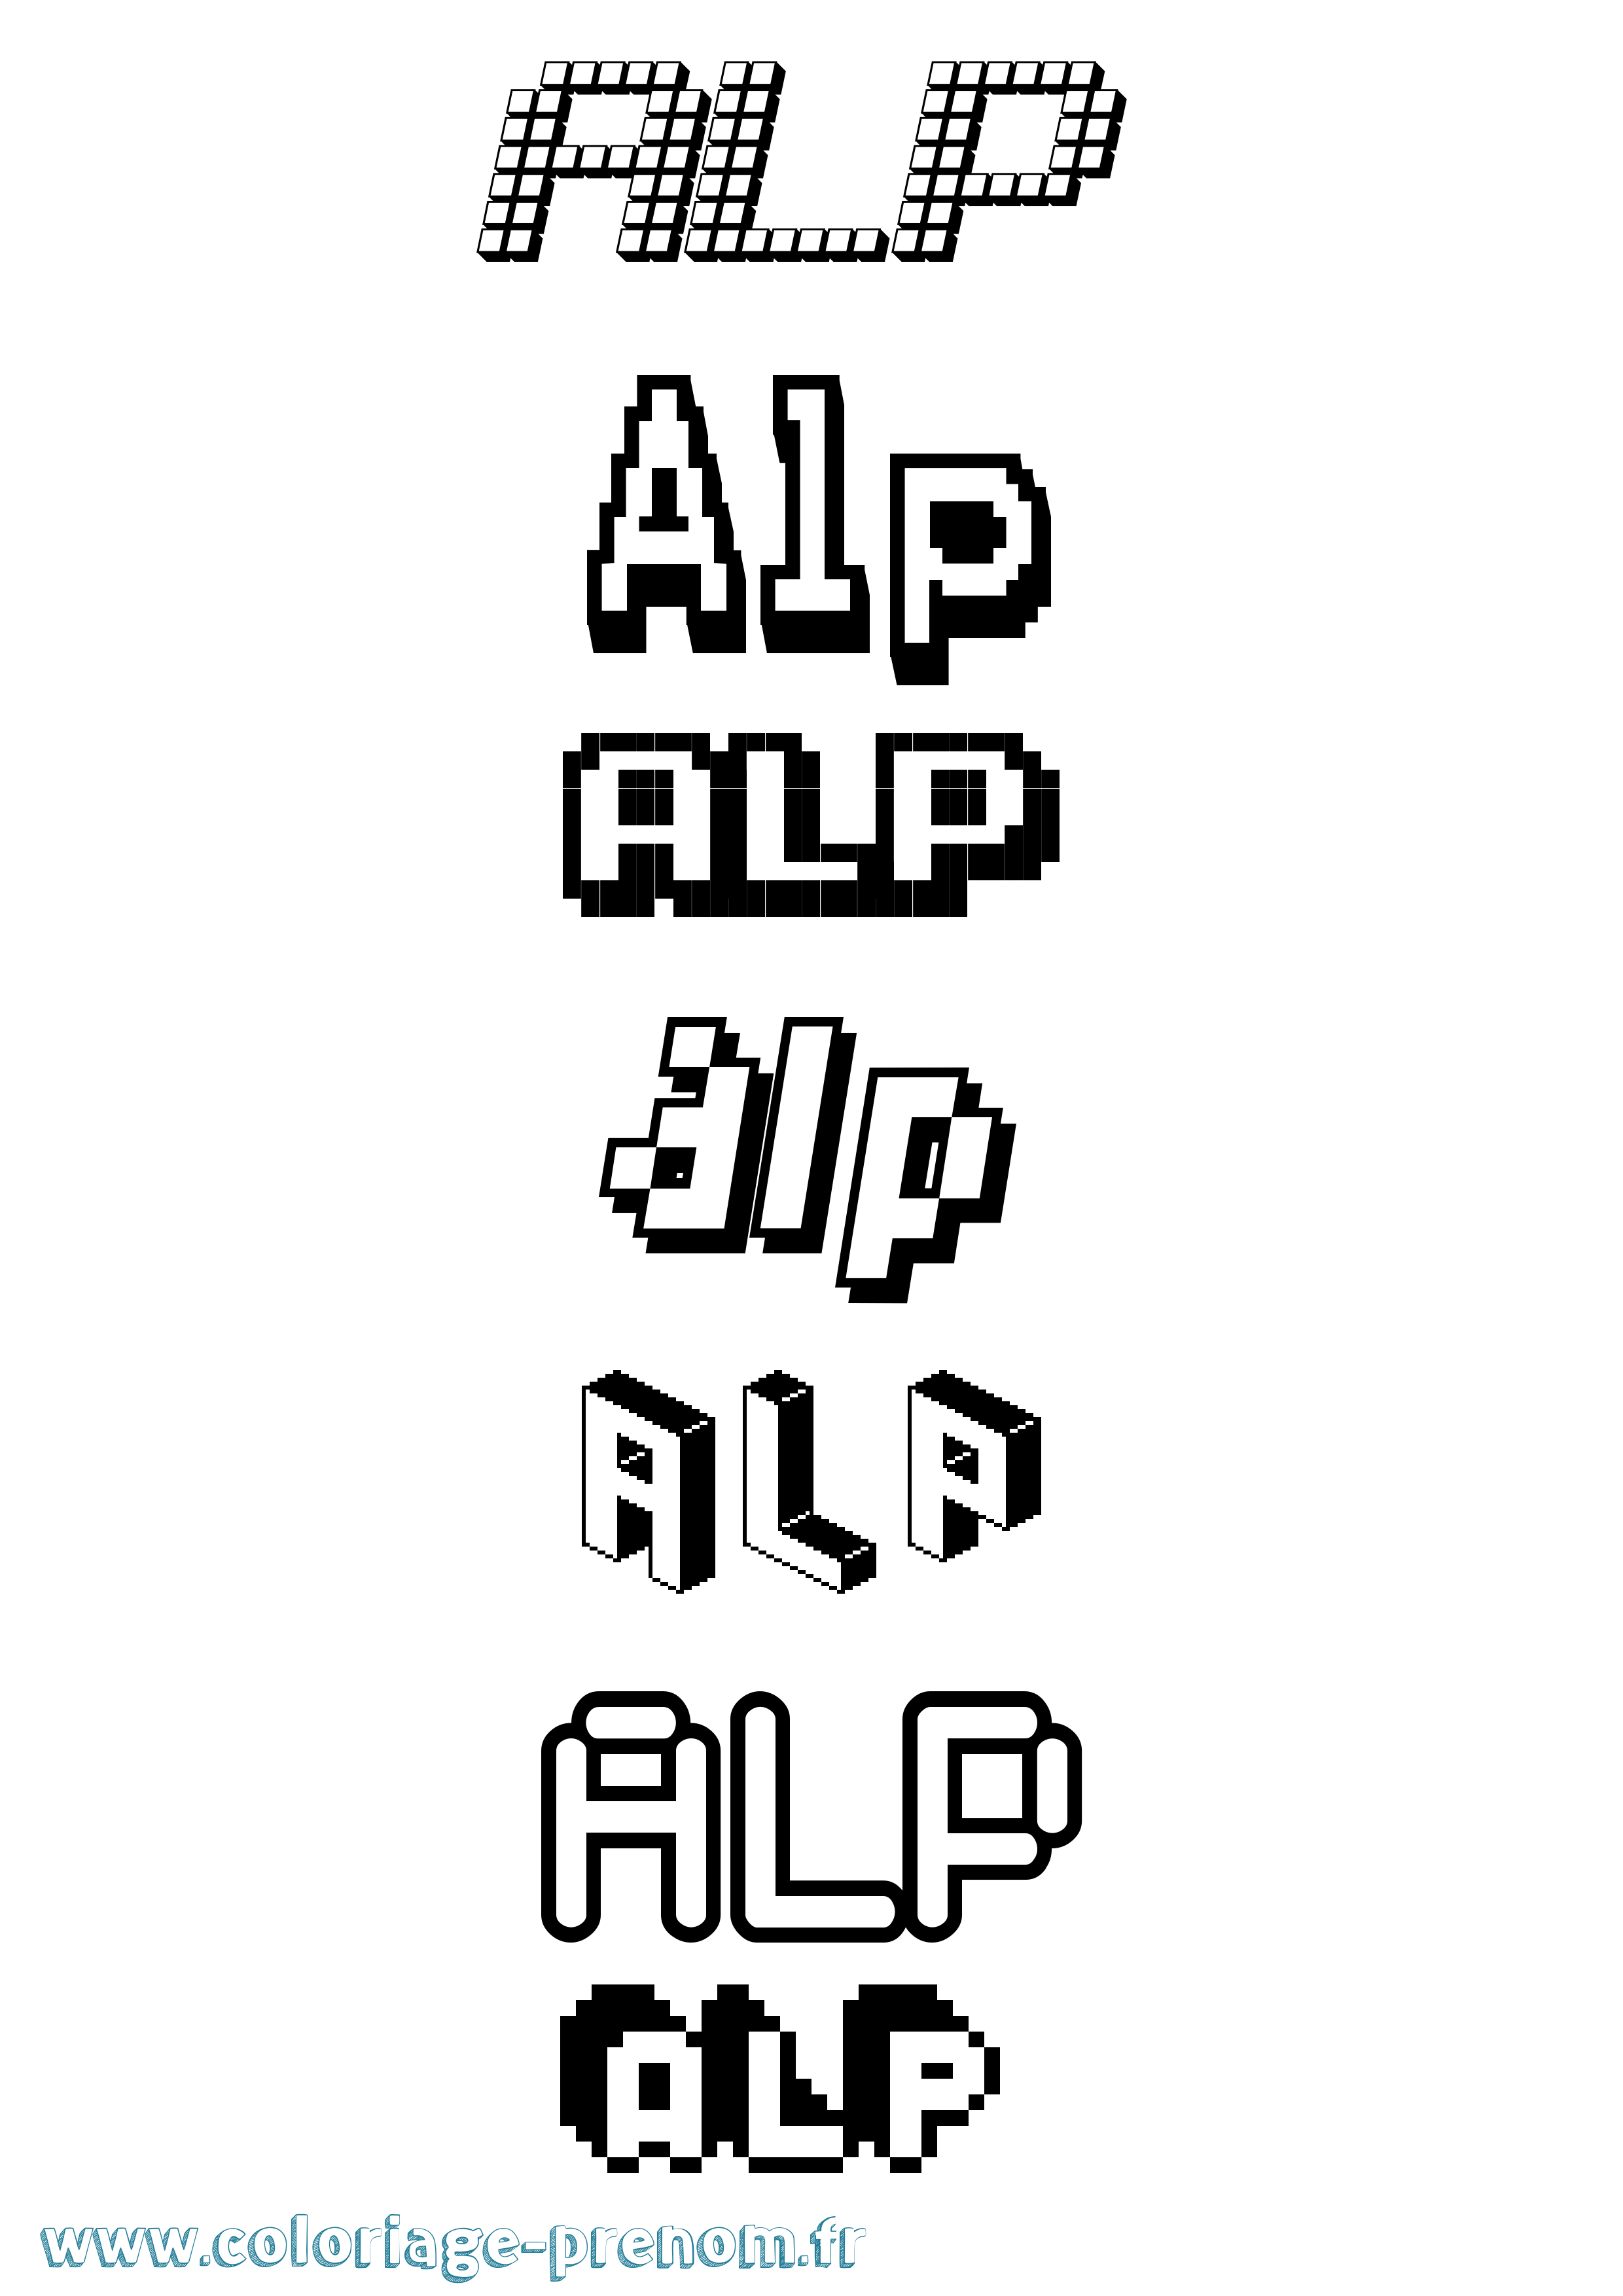 Coloriage prénom Alp Pixel